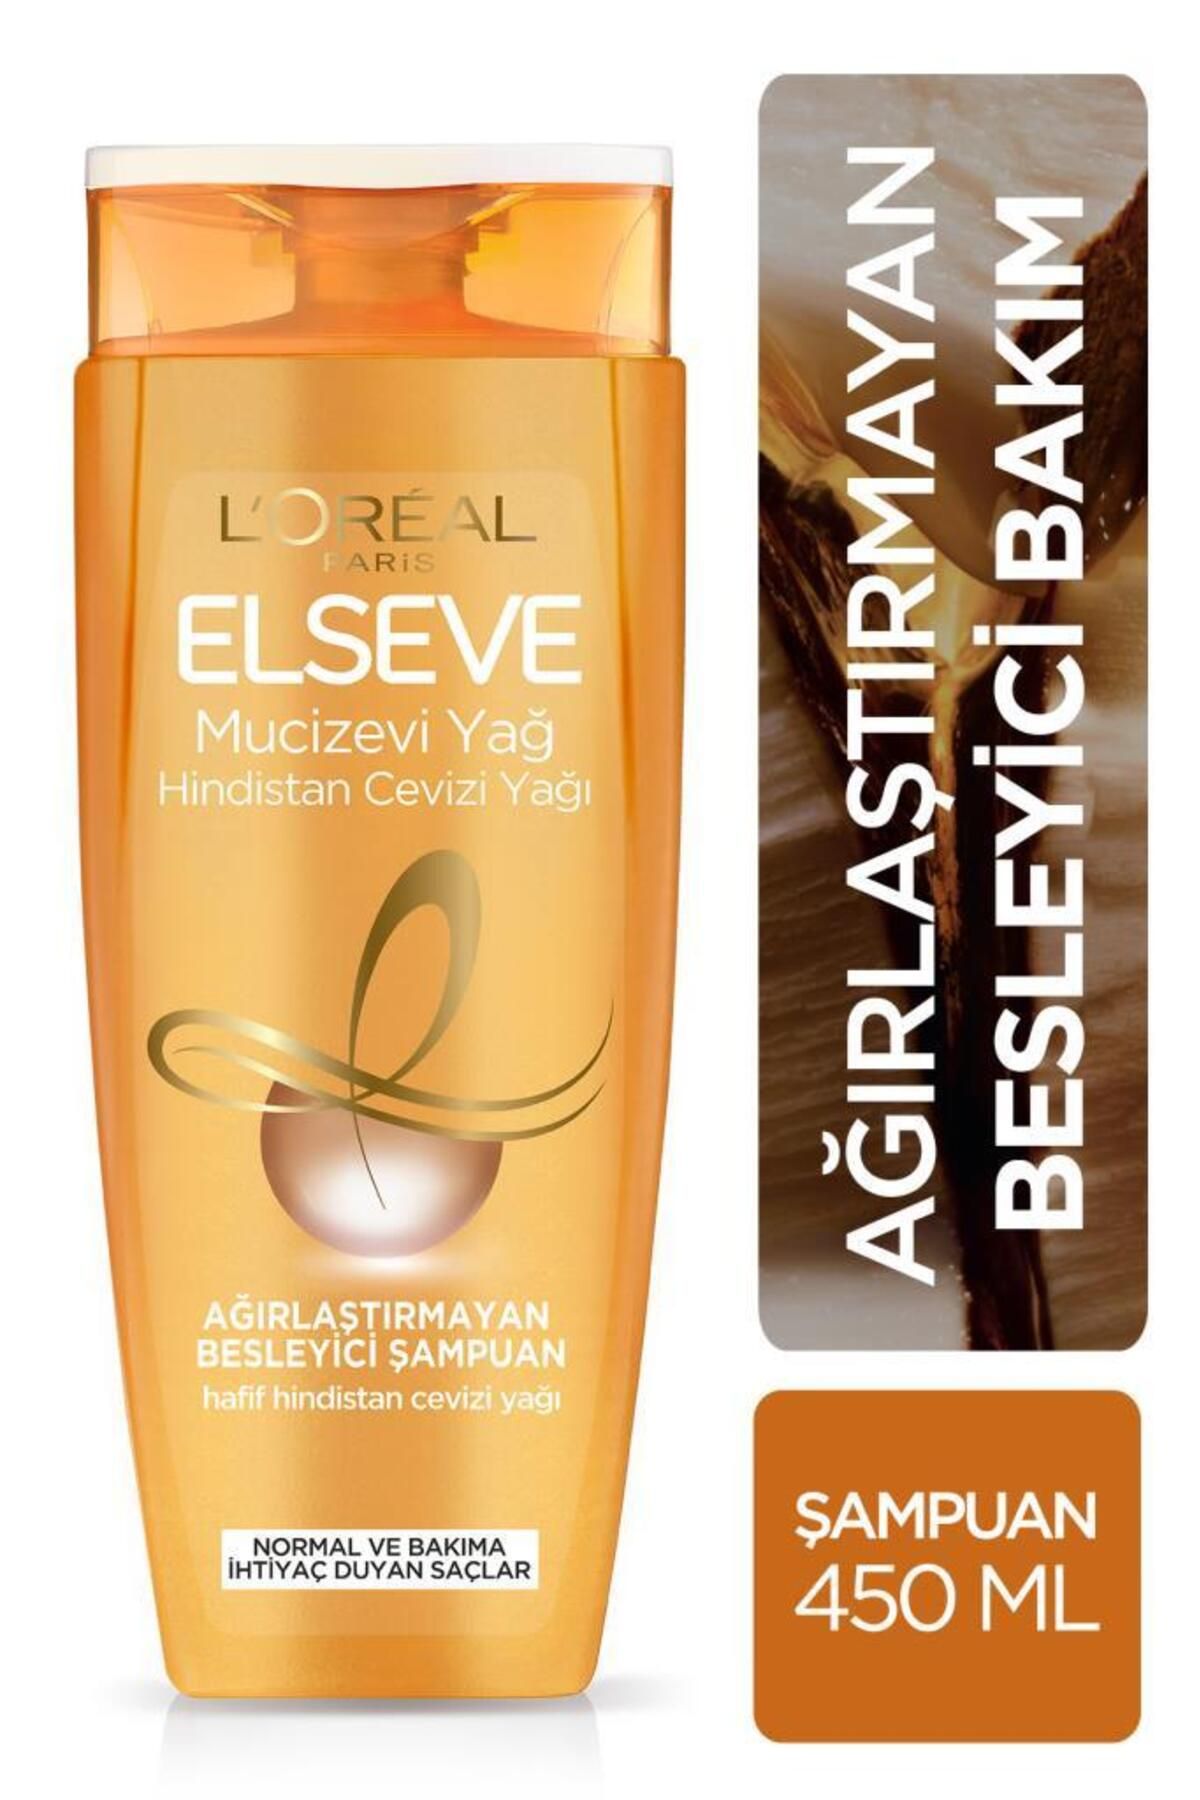 Elseve L'oréal Paris Mucizevi Hindistan Cevizi Yağı Ağırlaştırmayan Besleyici Şampuan 450 ml